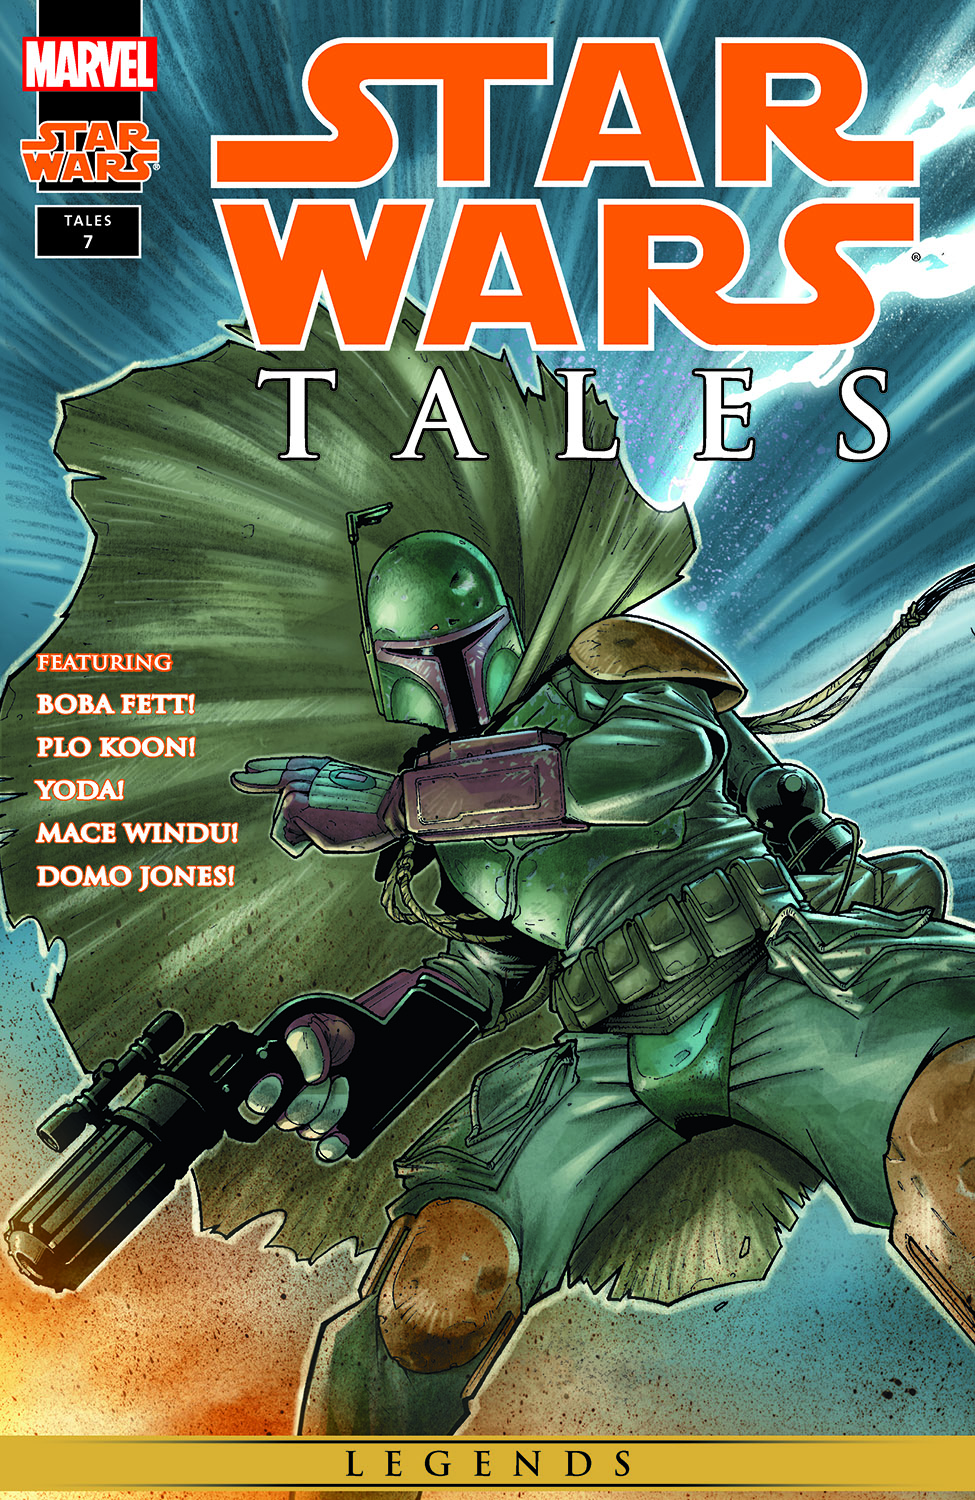 Star Wars Tales (1999) #7